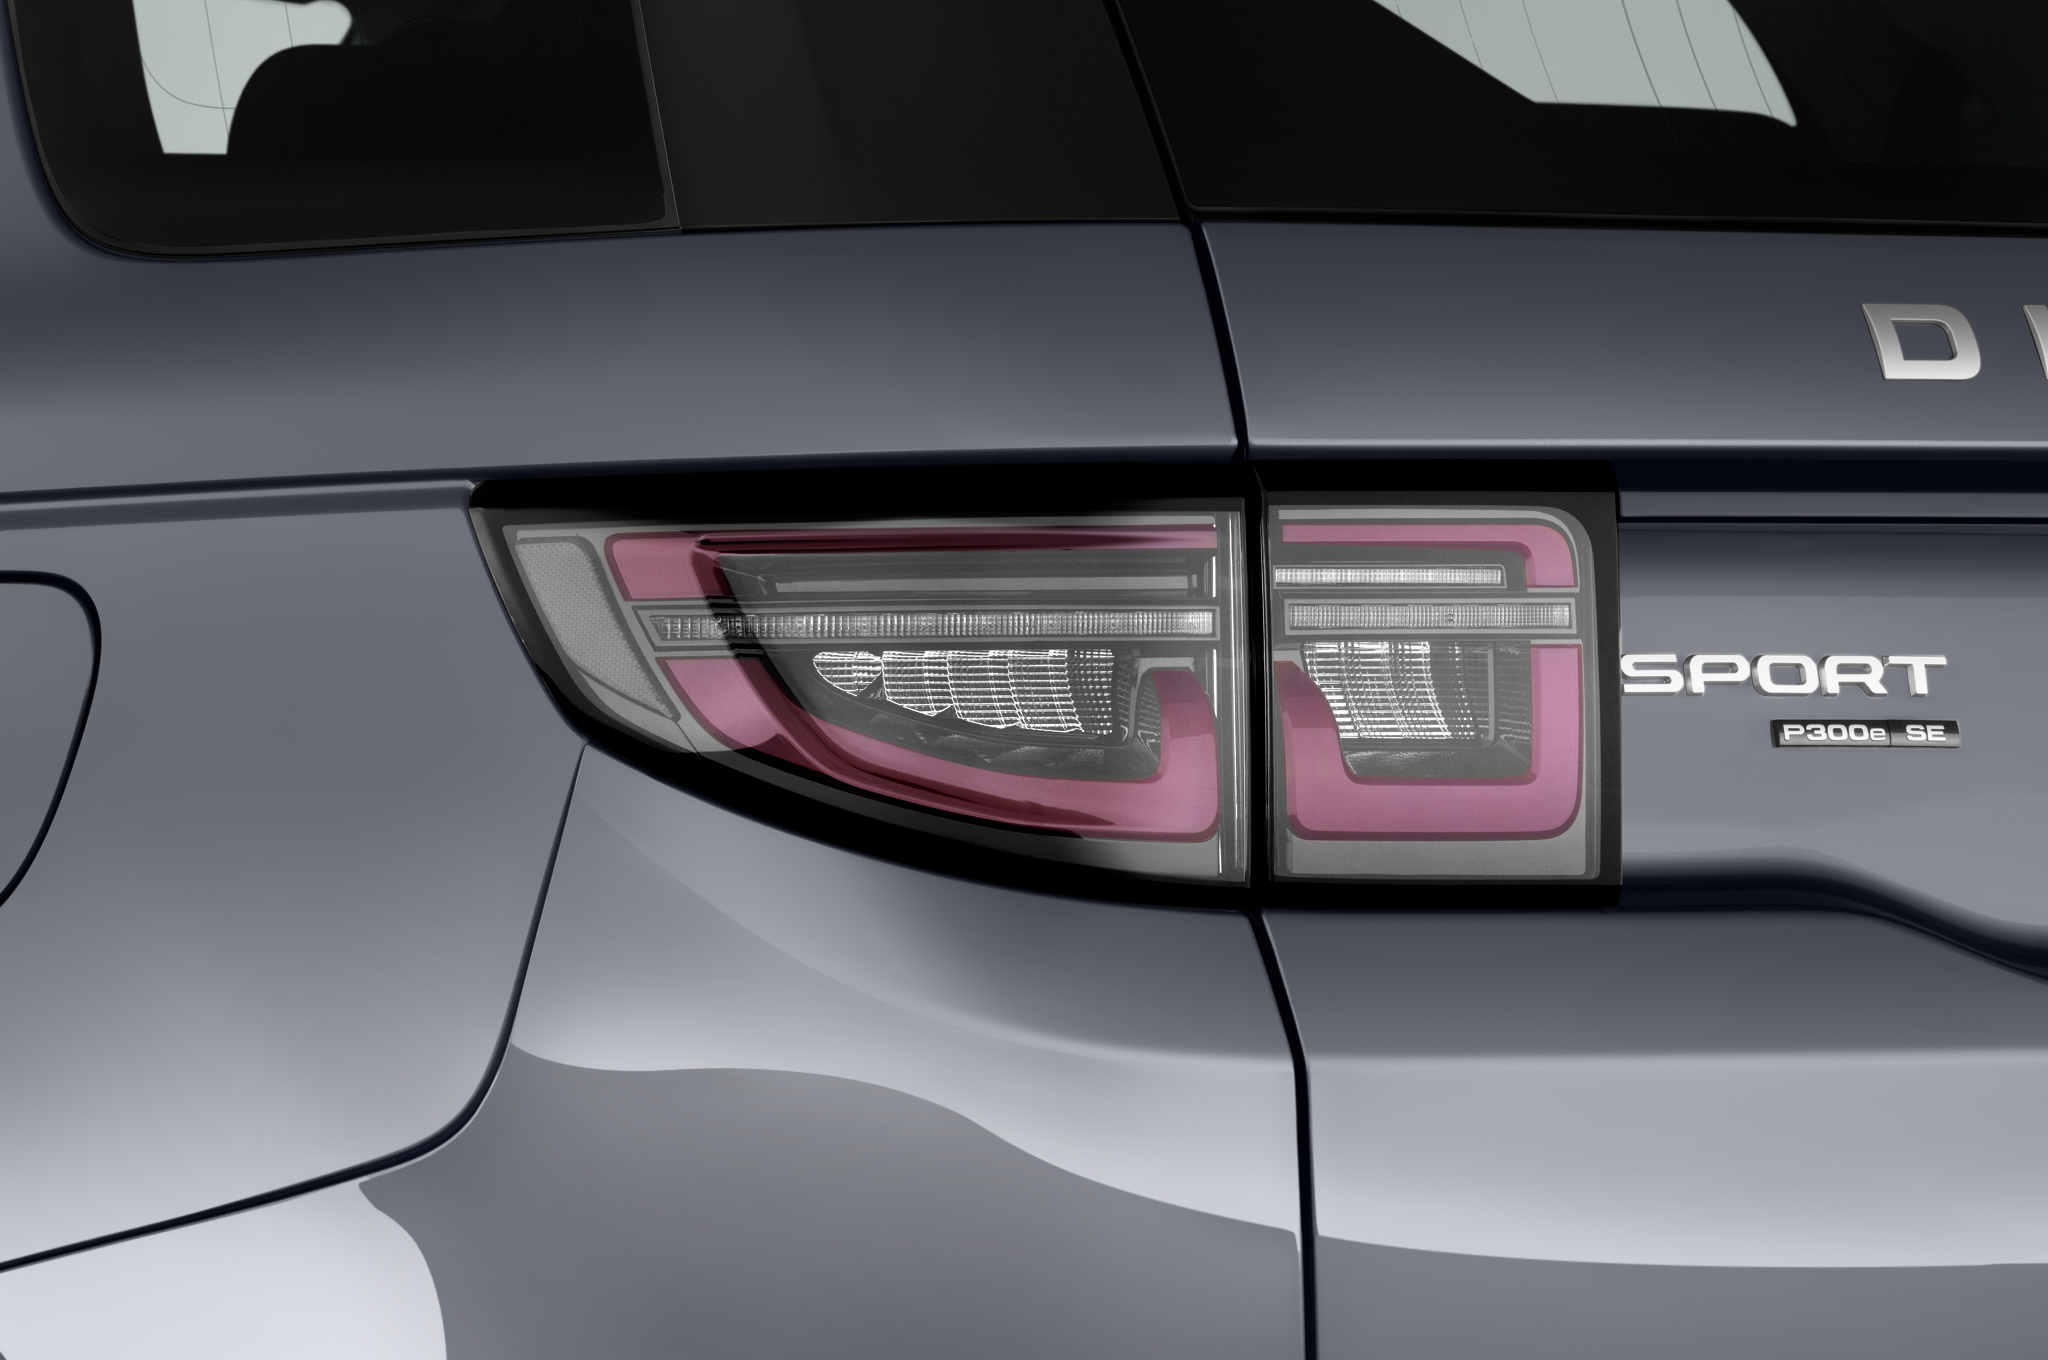 Land Rover Discovery Sport (Baujahr 2020) - 5 Türen Rücklicht